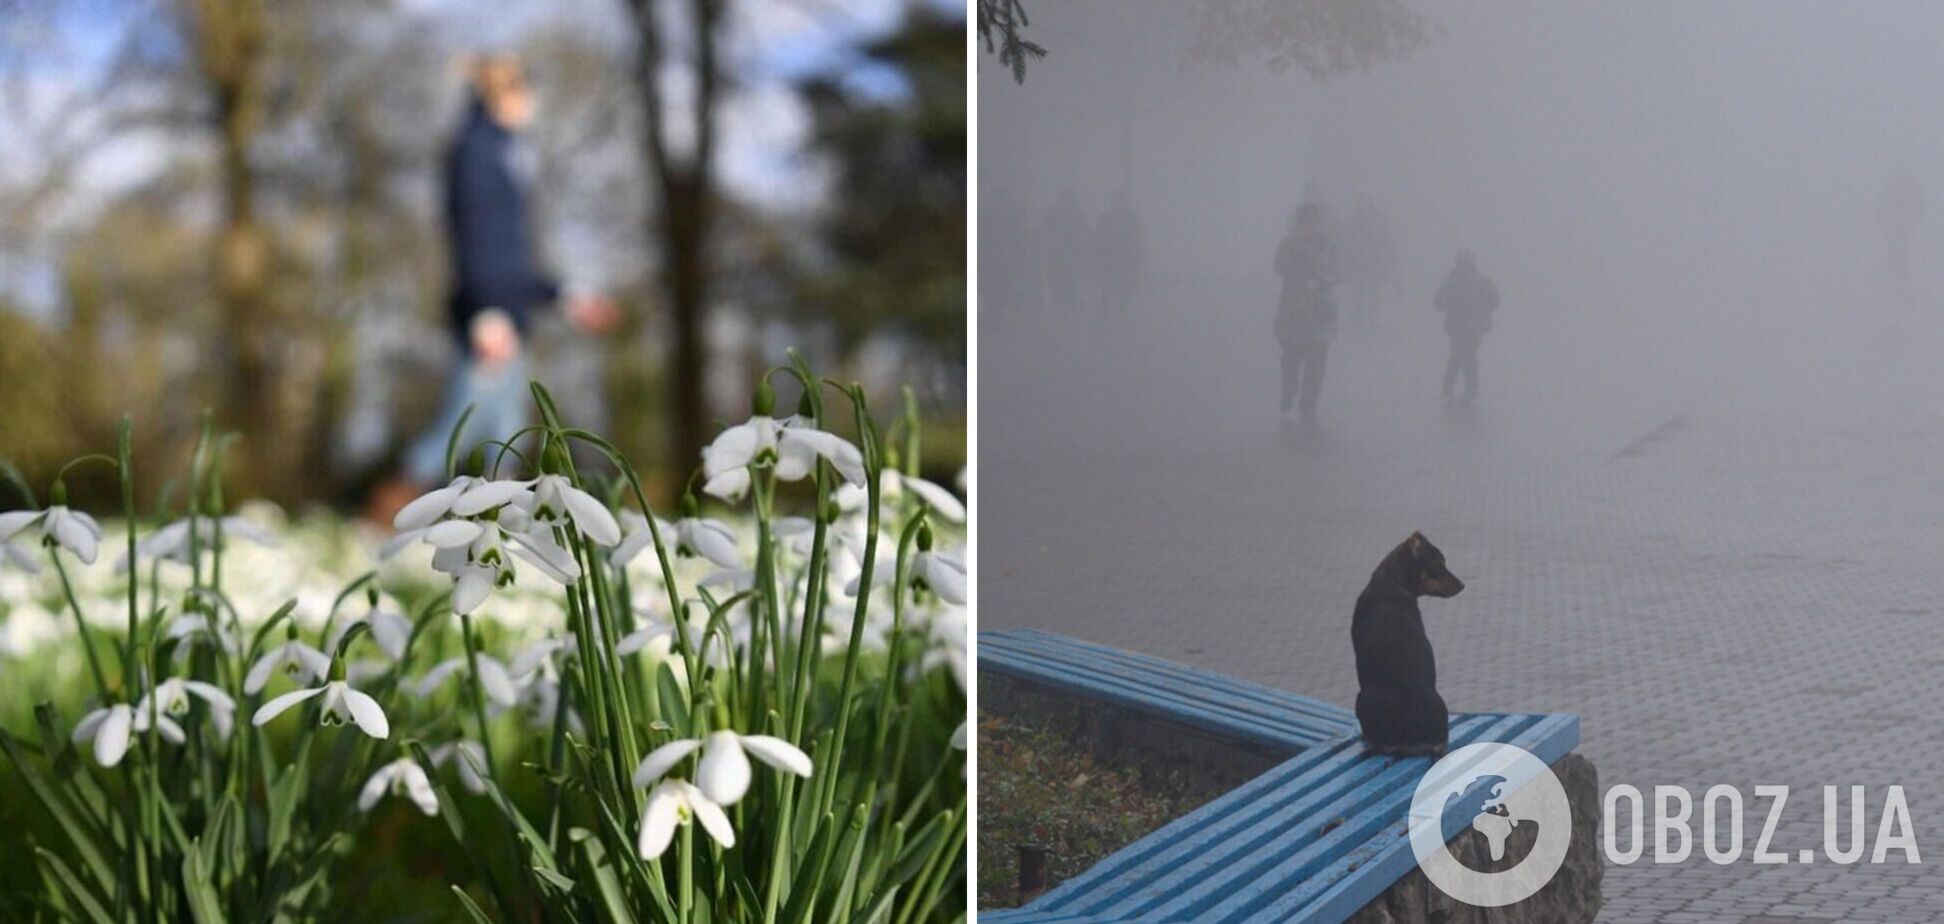 Без осадков, но с туманами: синоптики дали прогноз погоды на субботу, 9 марта